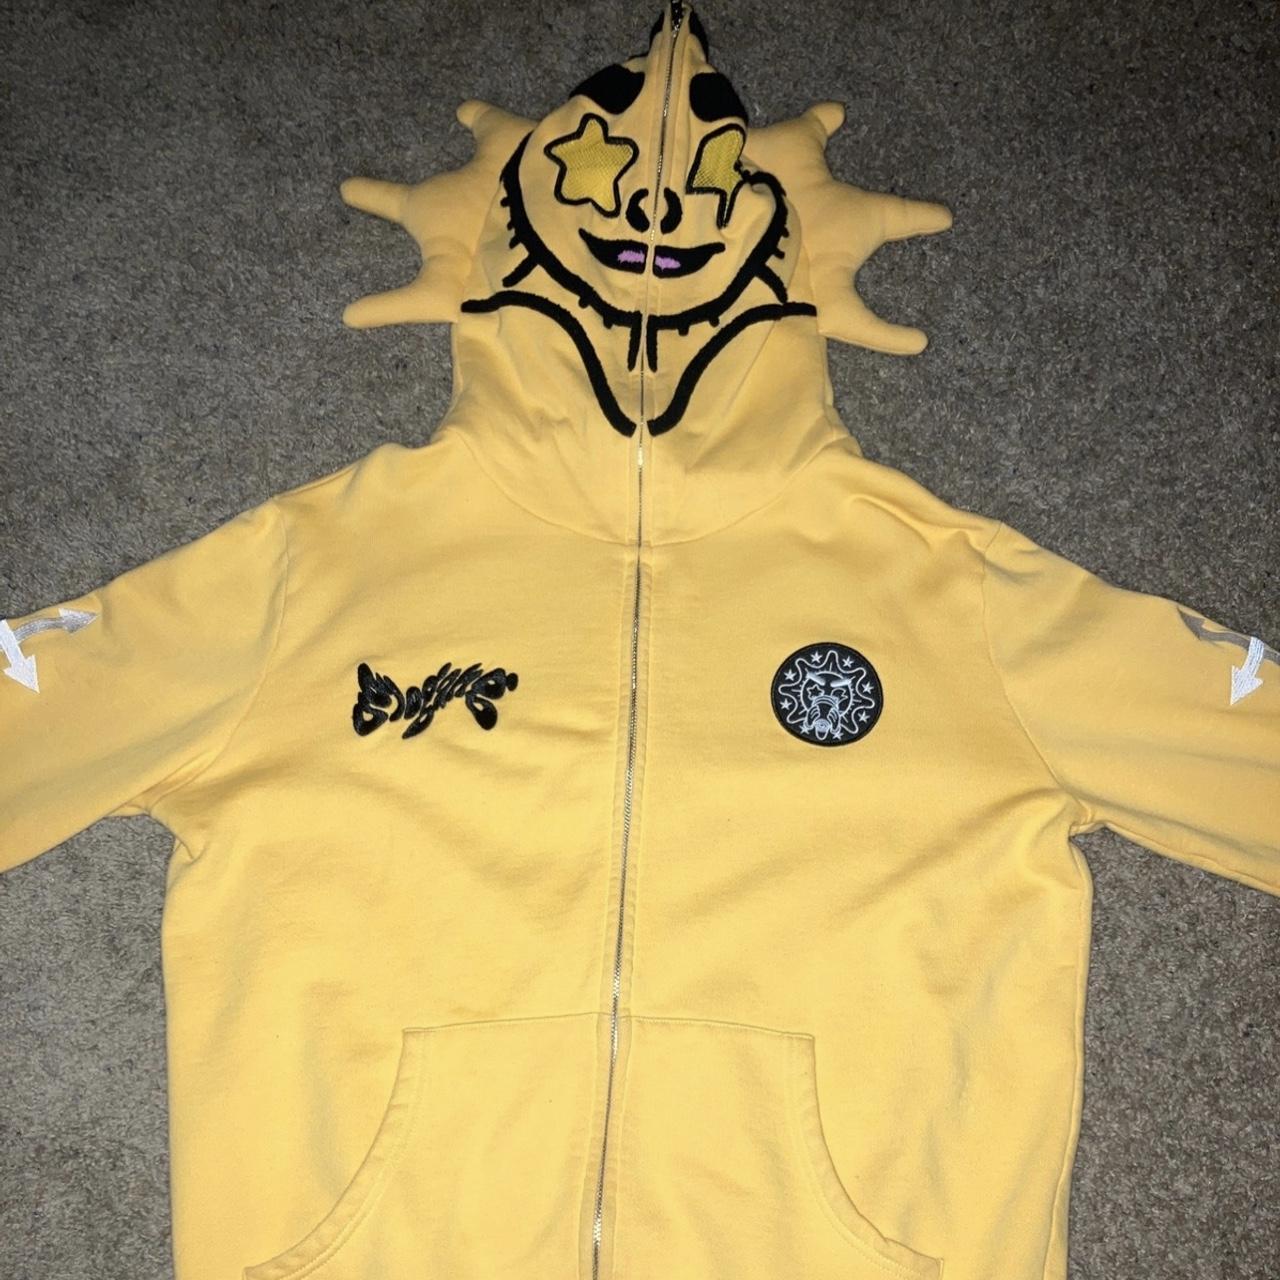 Yellow Glo Gang “Glo Man” zip up hoodie. #streetwear - Depop